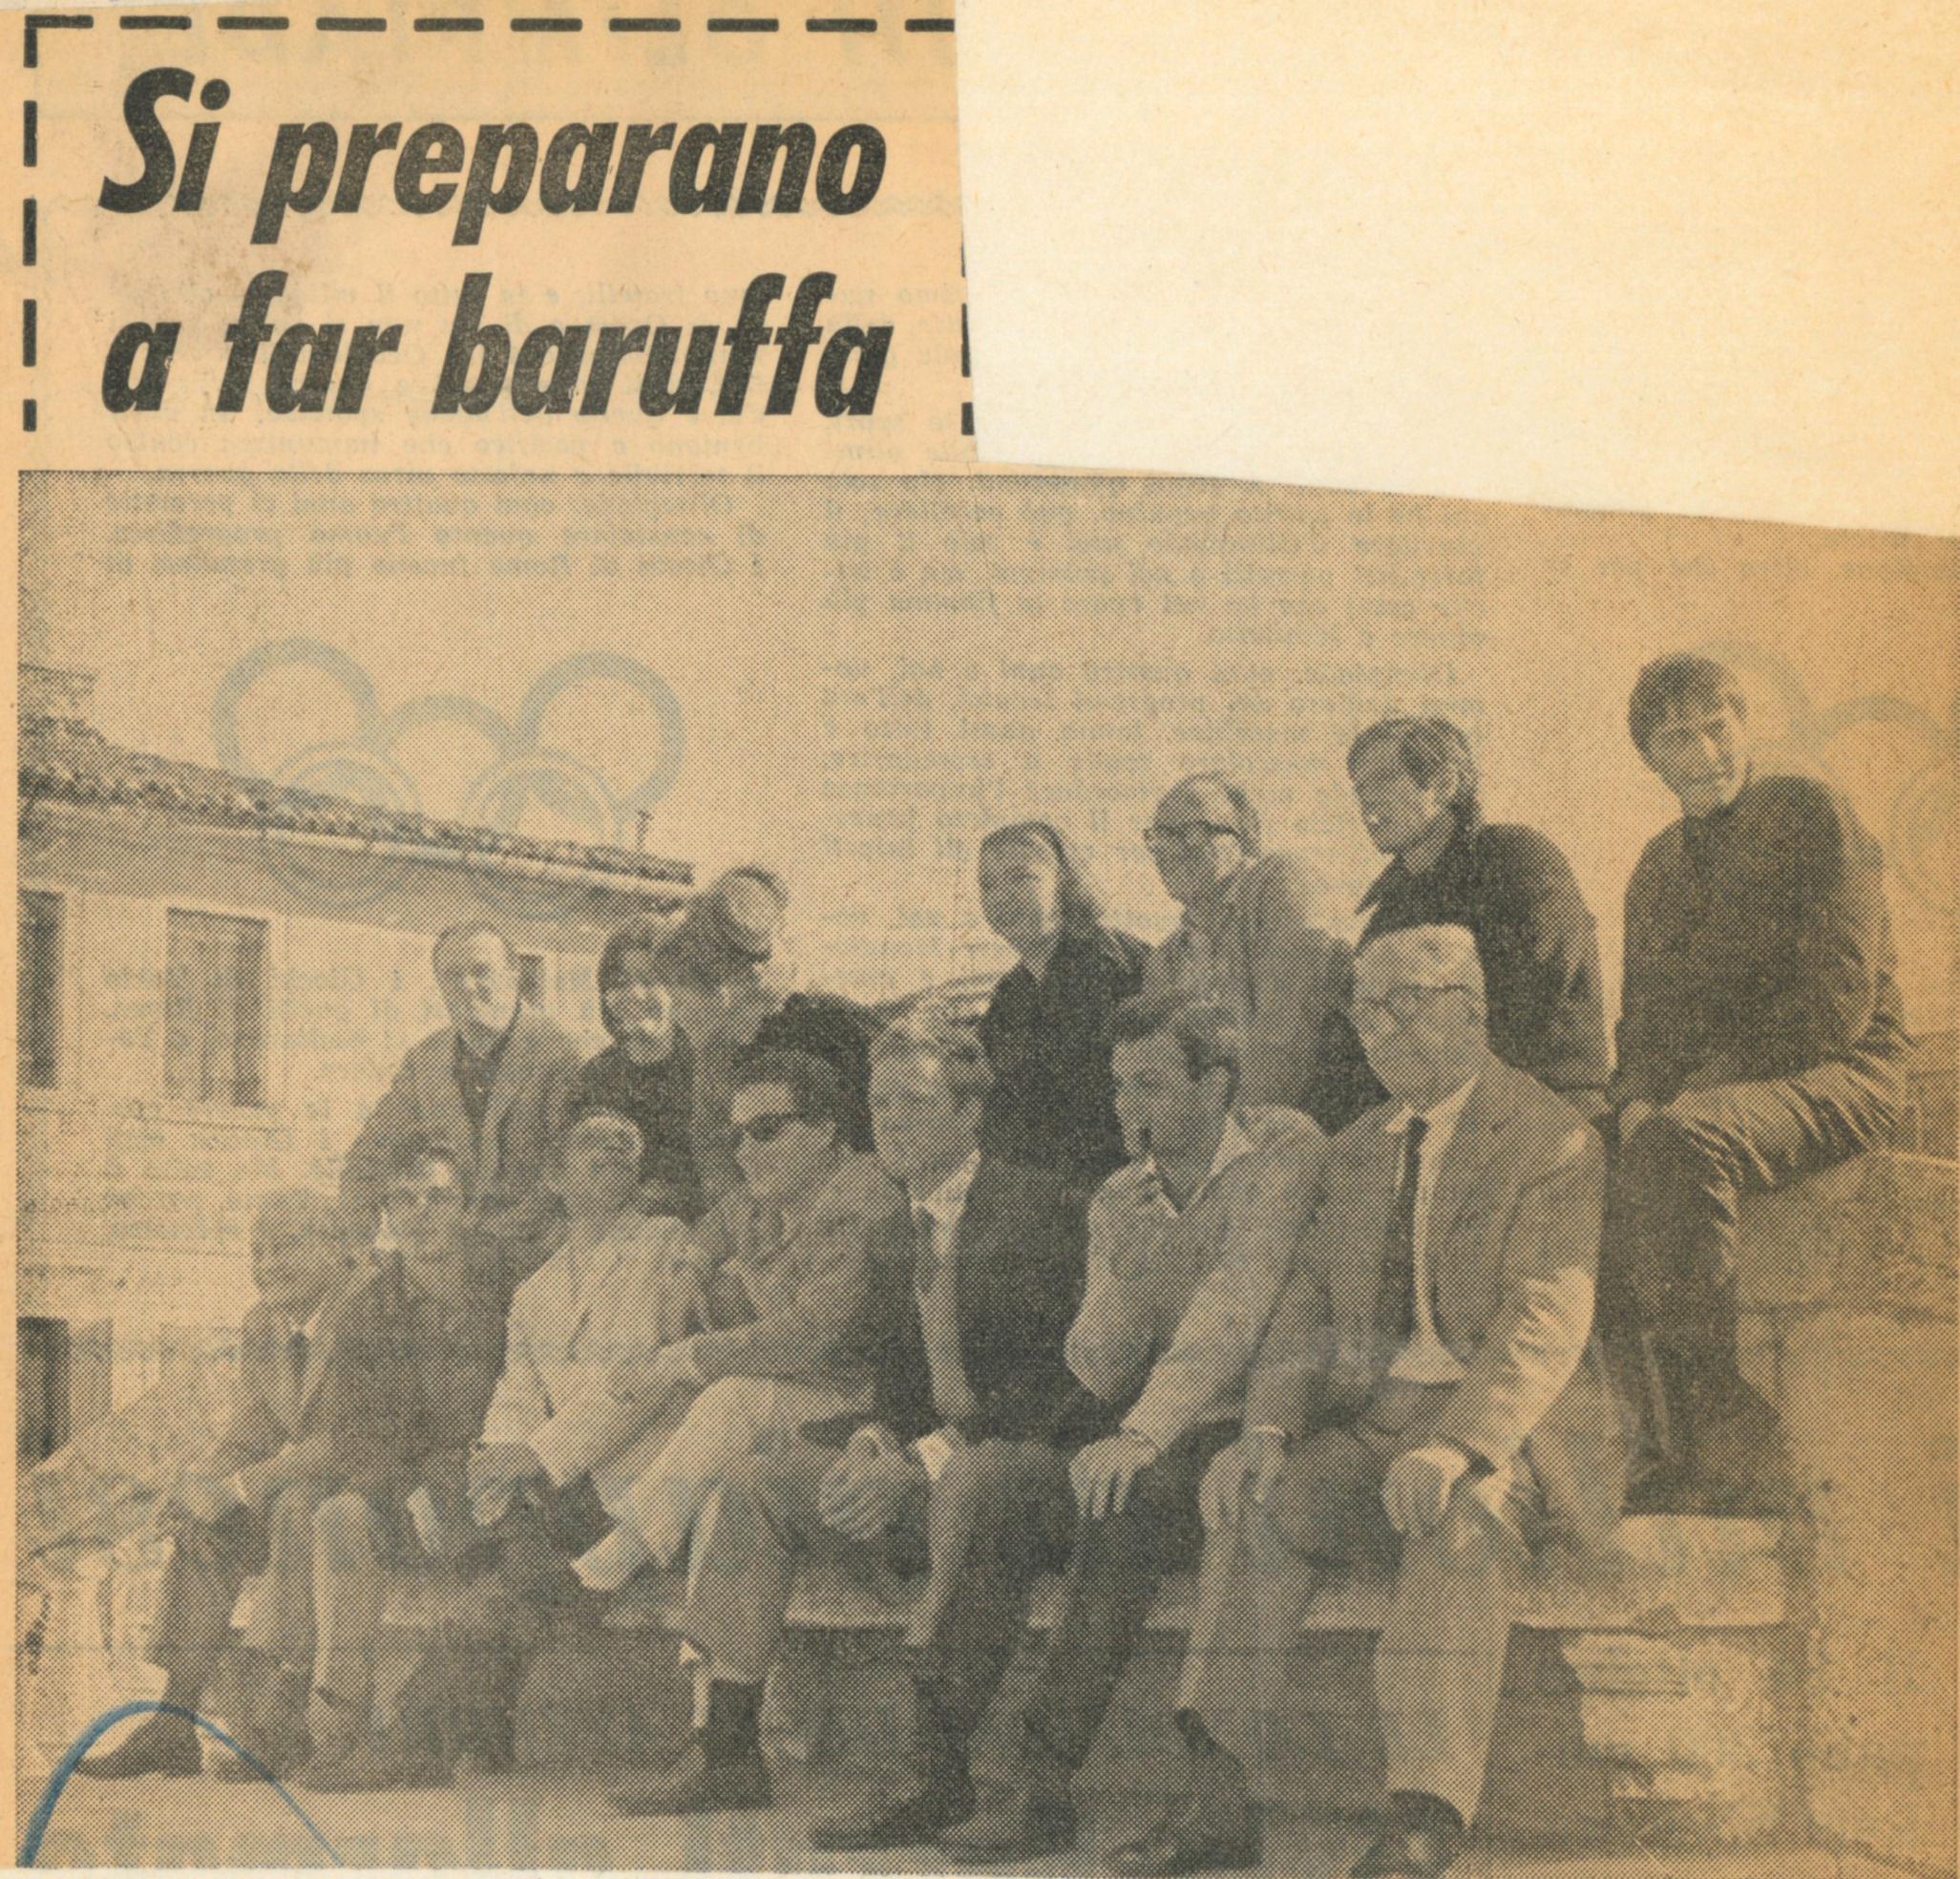  “Avanti”, 10 ottobre 1964. A Chioggia la compagnia si prepara per lo spettacolo - Archivio Piccolo Teatro di Milano